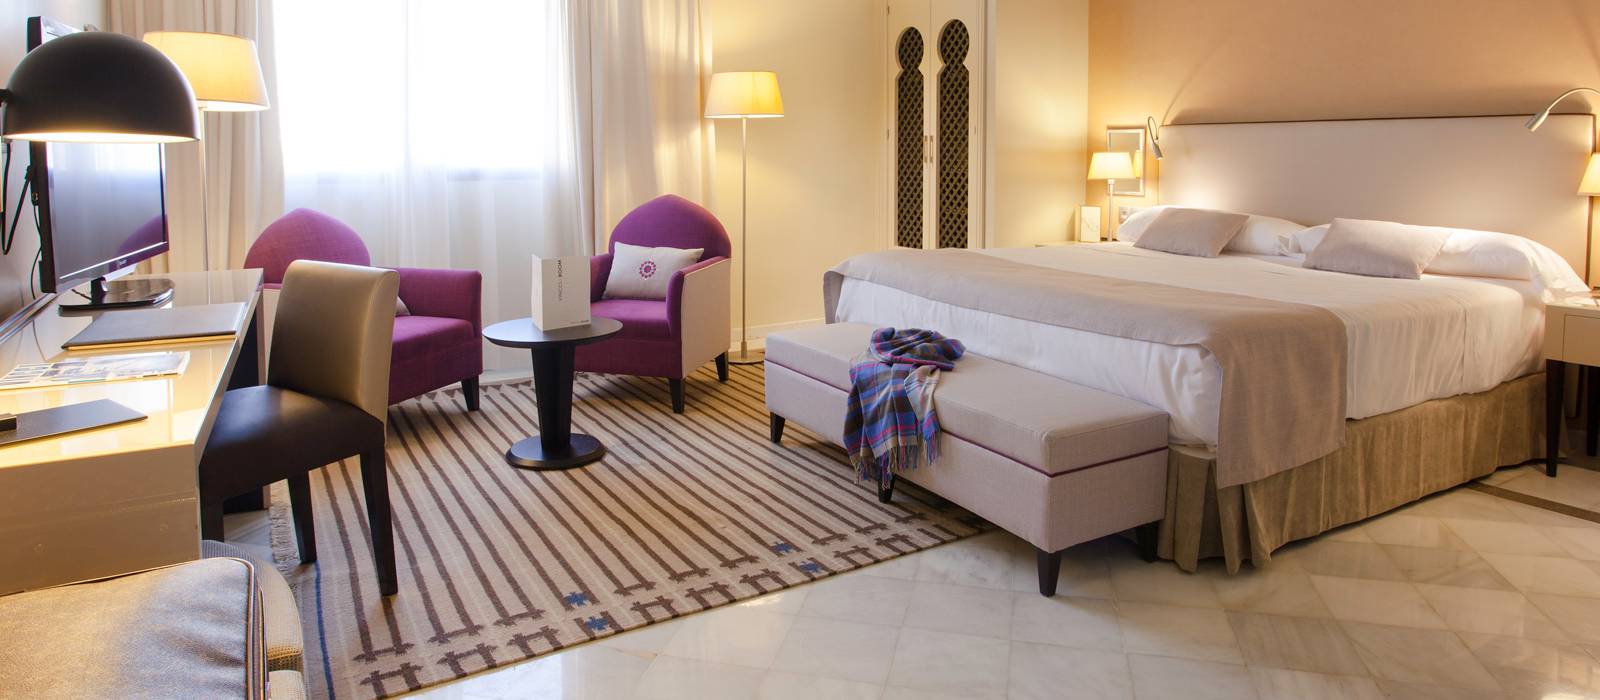 Ofertas Hotel Vincci Granada Albayzín - Anticípate y ahorra - 20%!